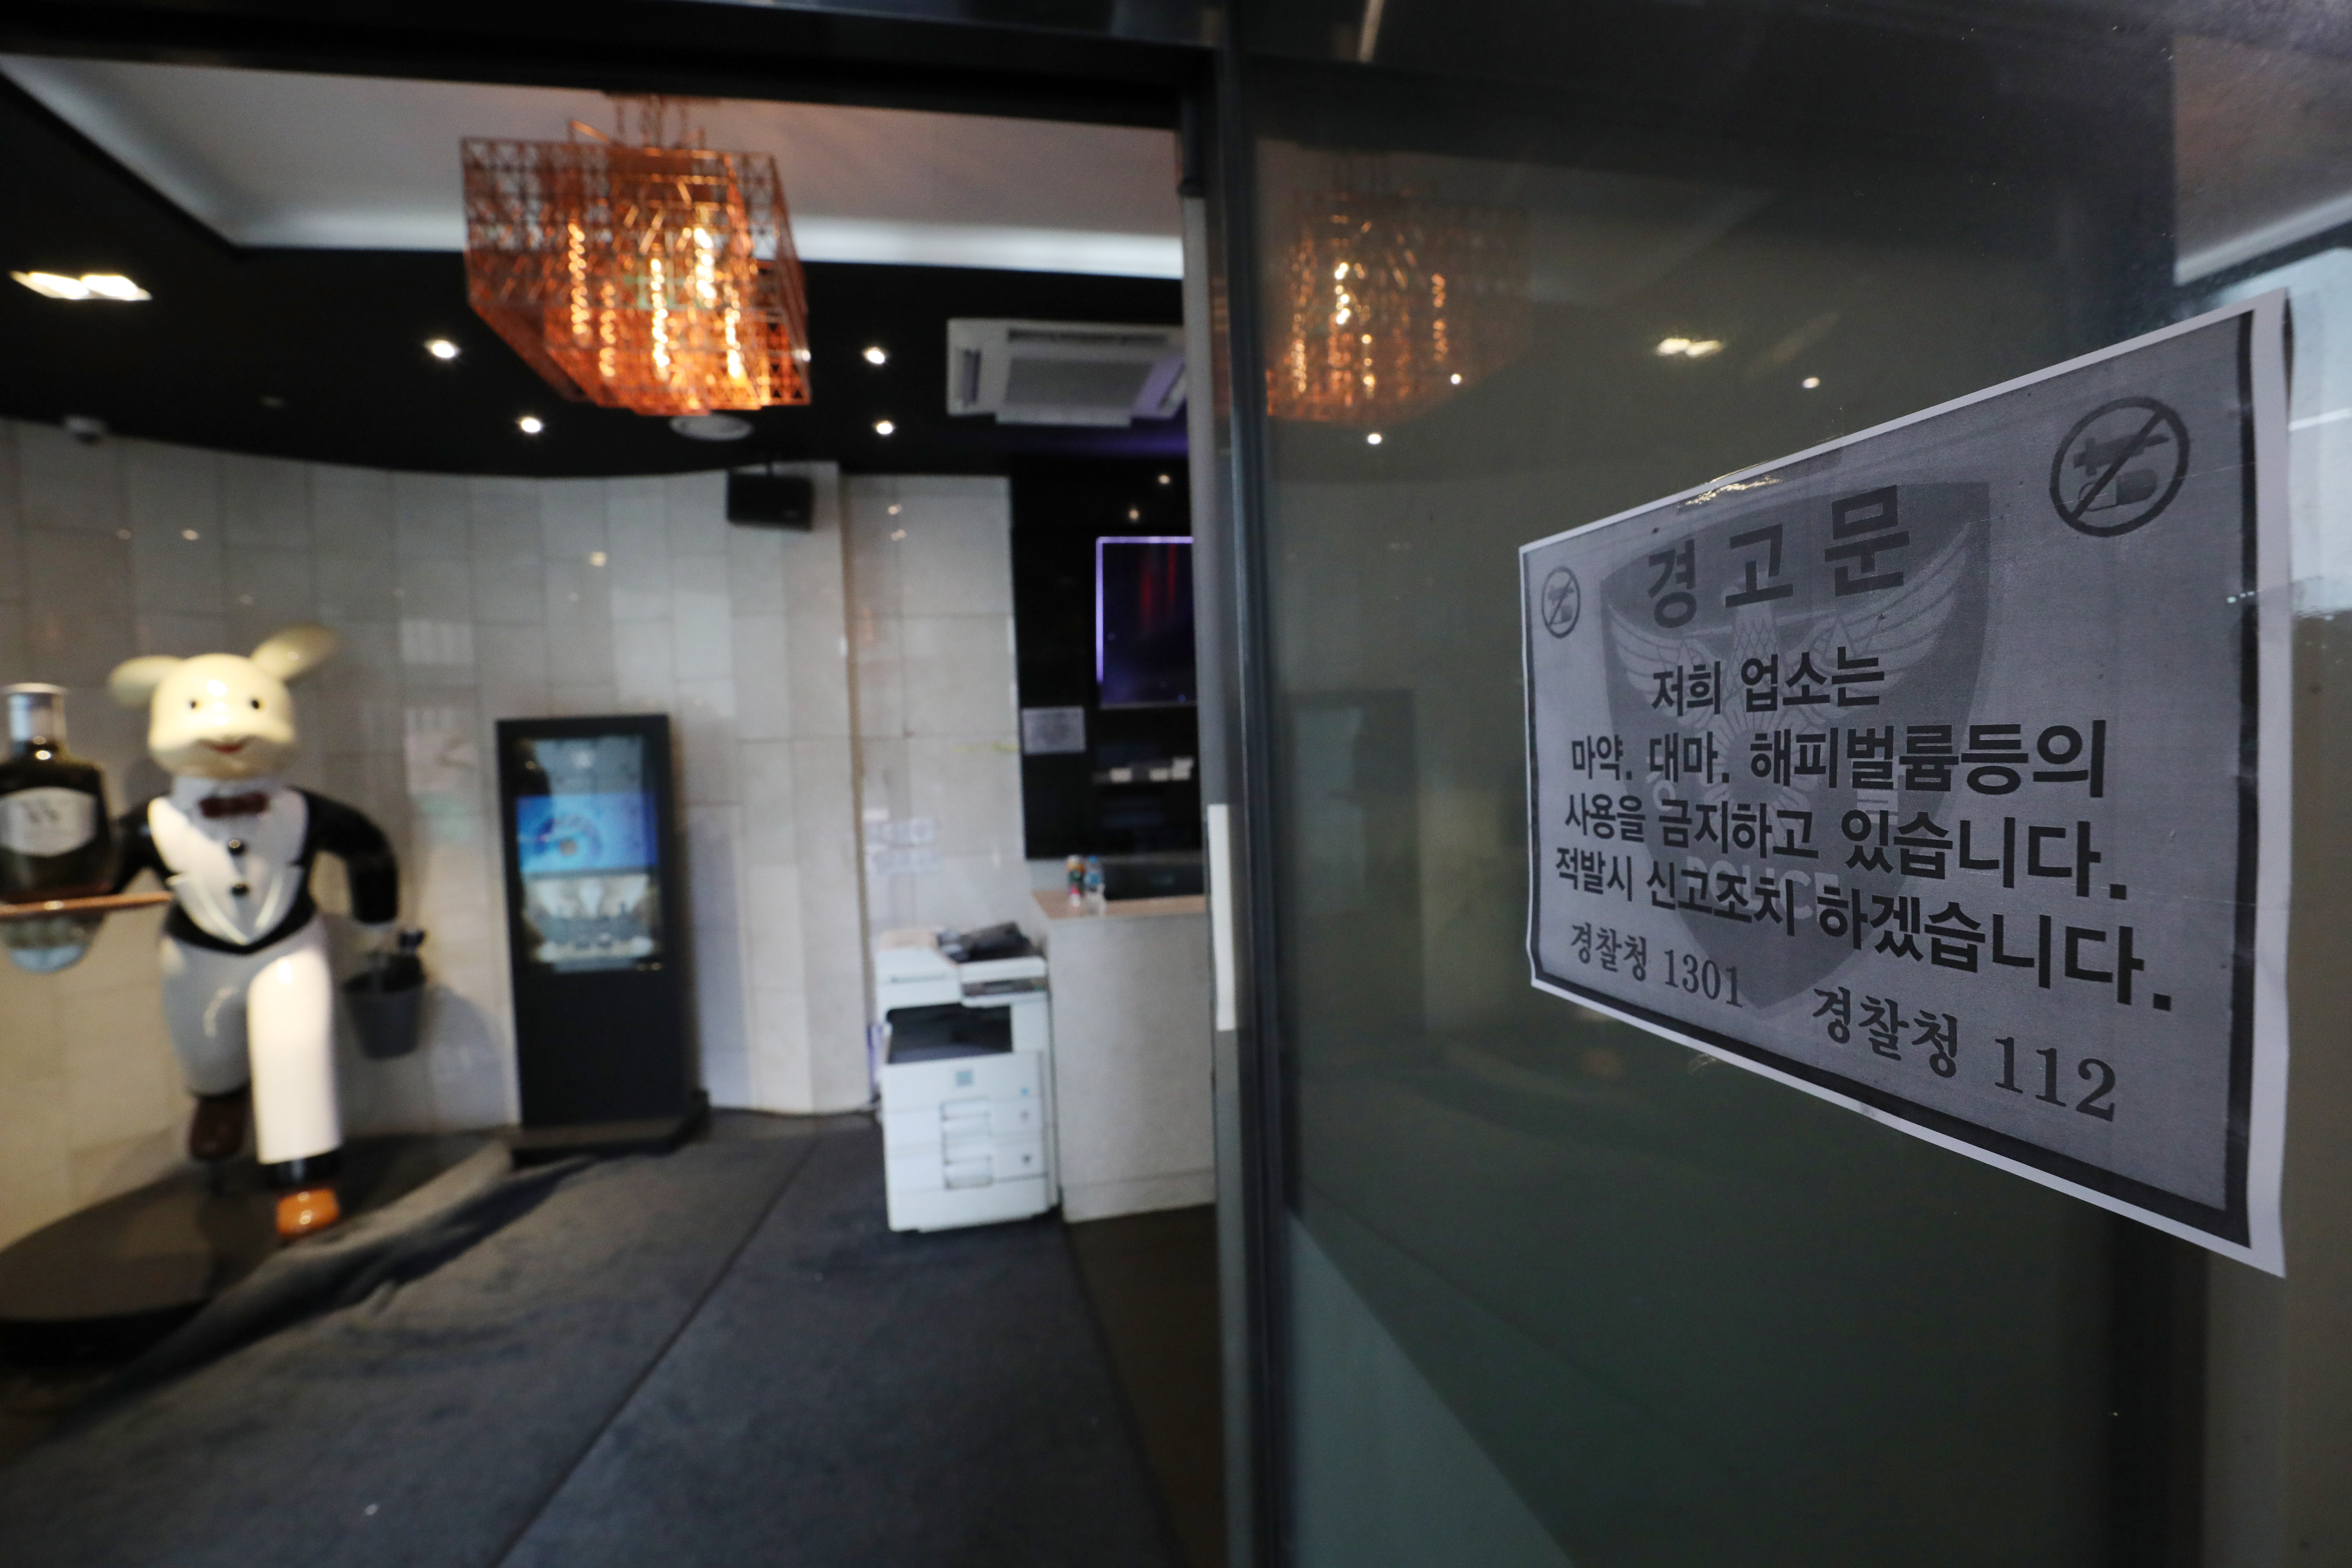 6일 여종업원이 사망하는 사건이 발생한 서울 강남의 유흥업소 입구에 마약 사용을 금지하는 경고문이 붙여있다. 2022.7.6 뉴스1